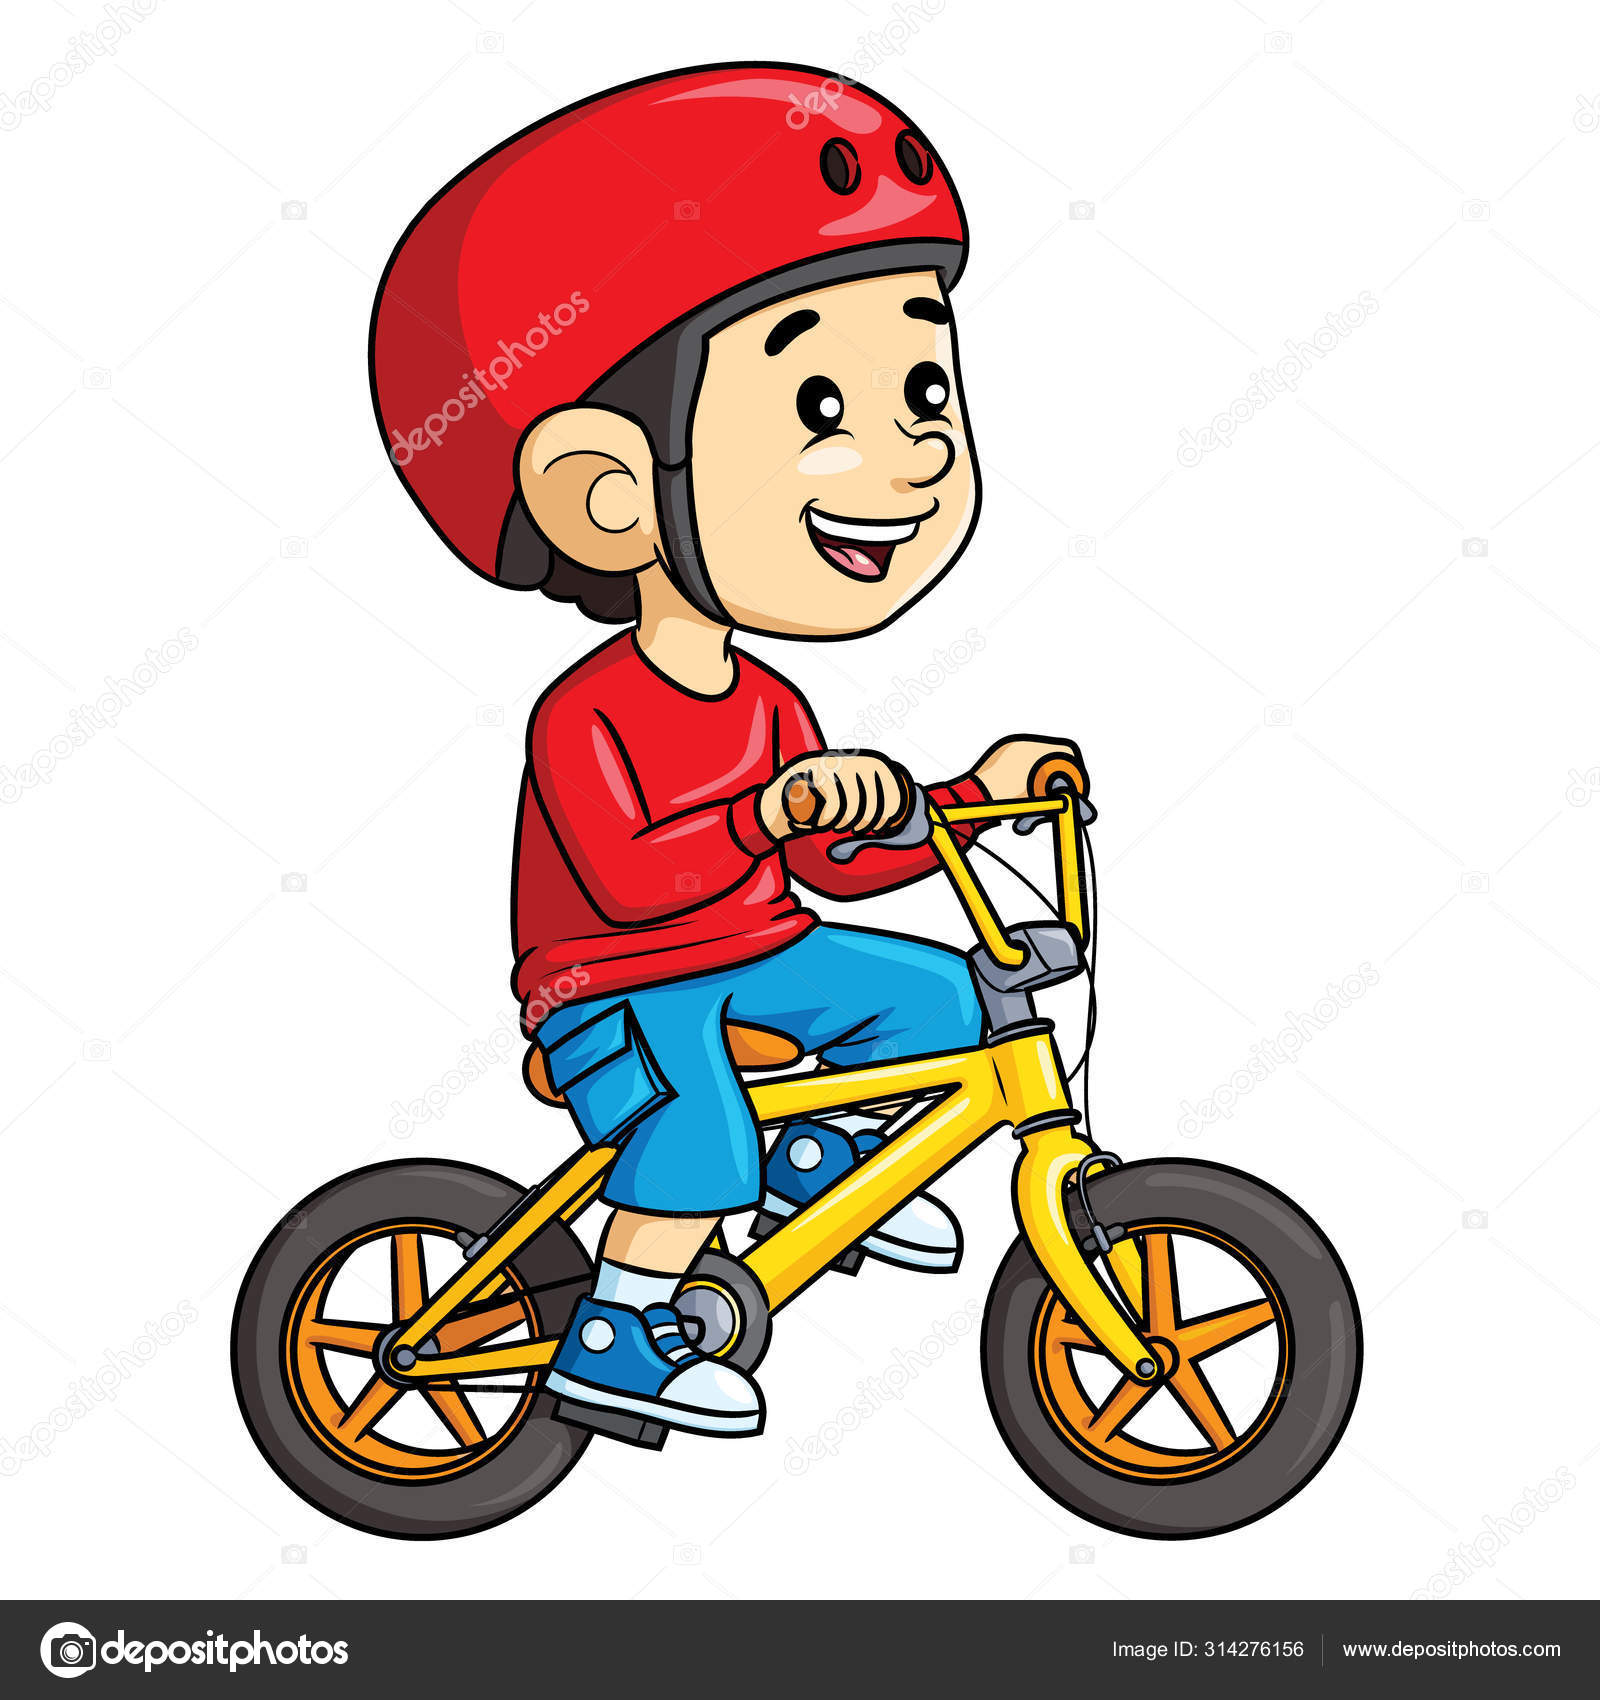 He rode a bike yesterday. Мальчик на велосипеде. Дети с велосипедом. Ride a Bike для детей. Велосипедисты мультяшные.